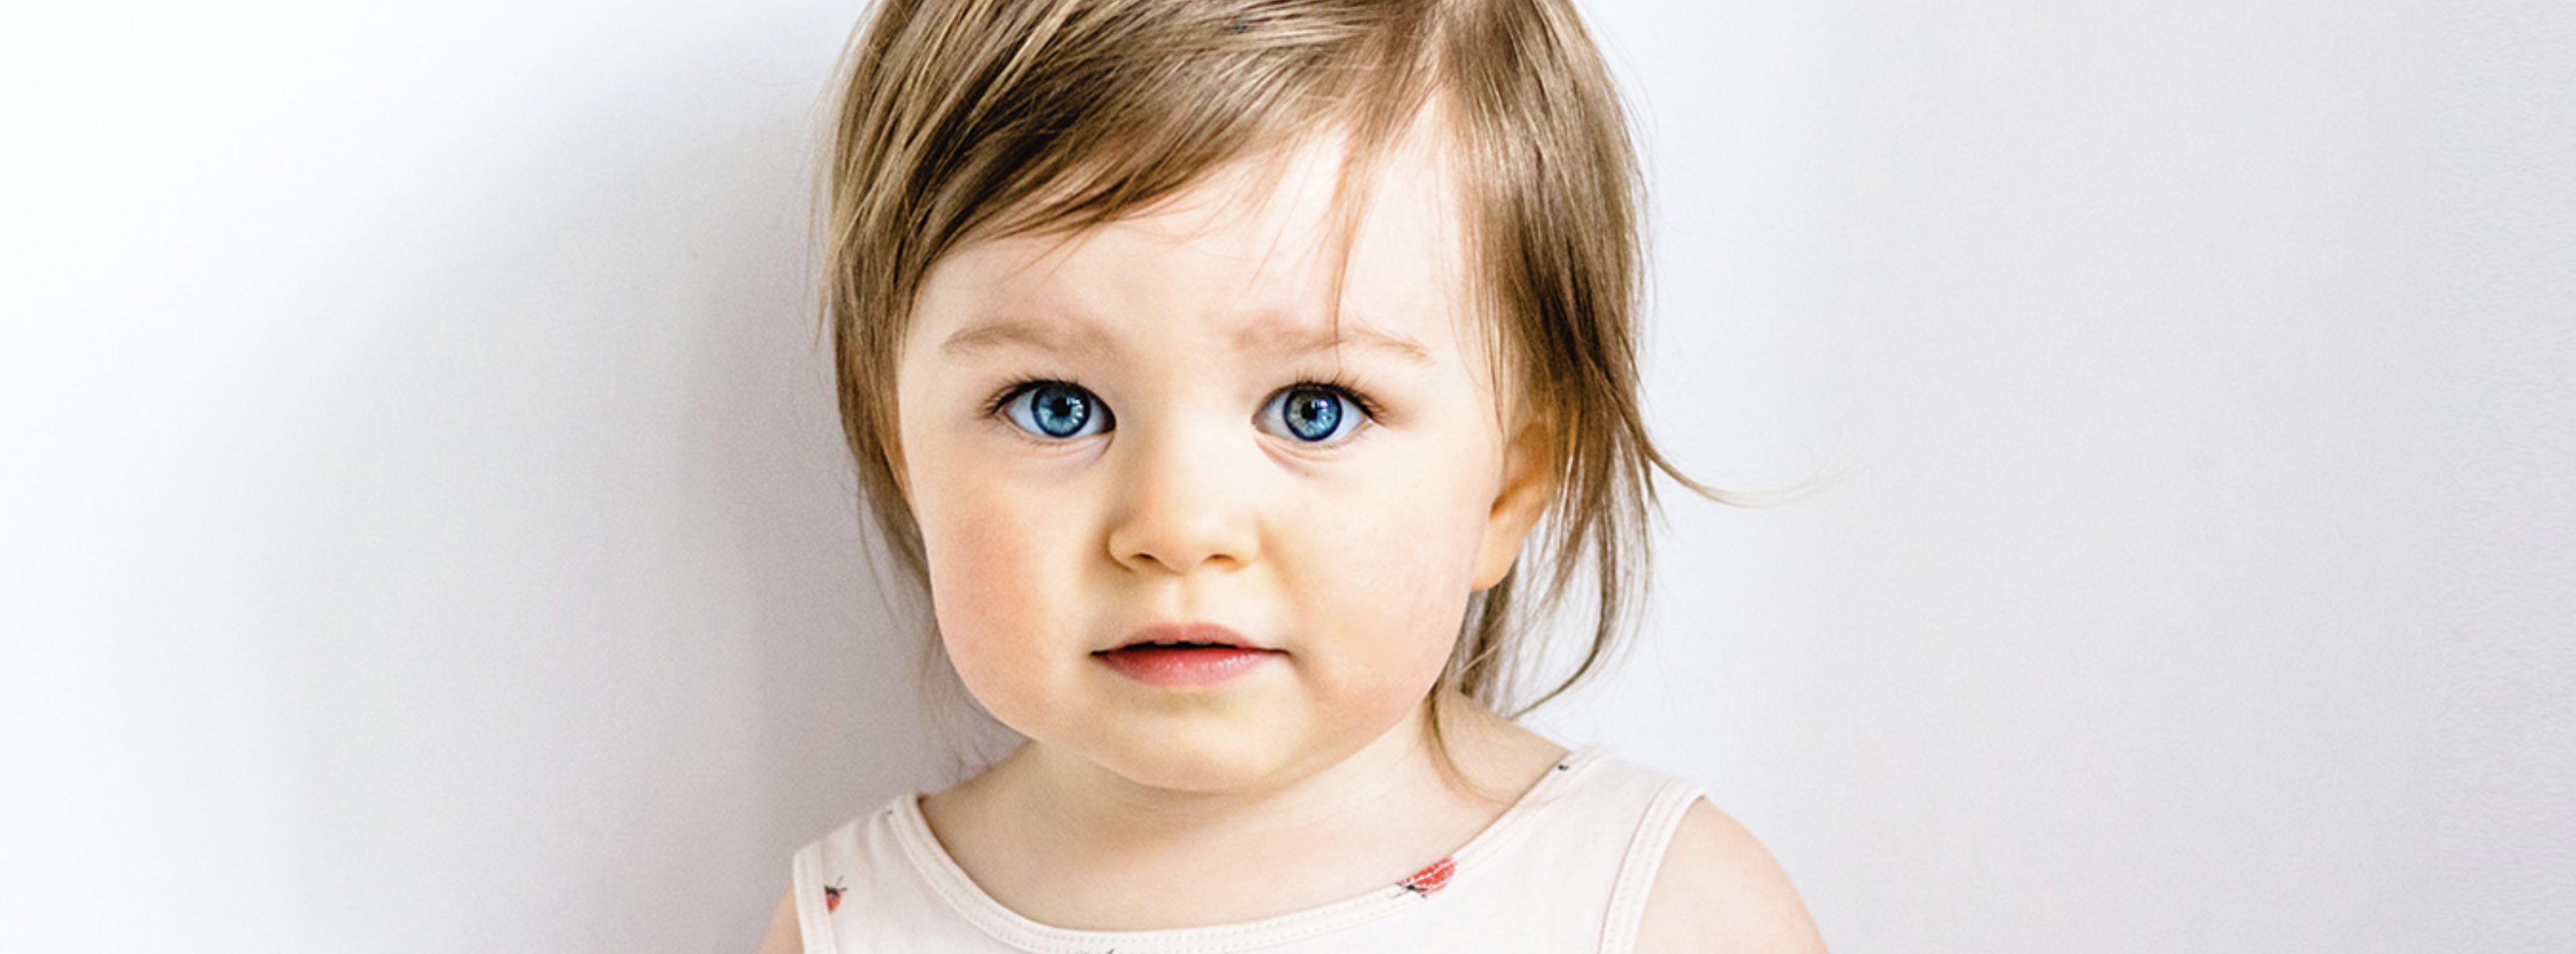 Kleinkind mit blauen Augen